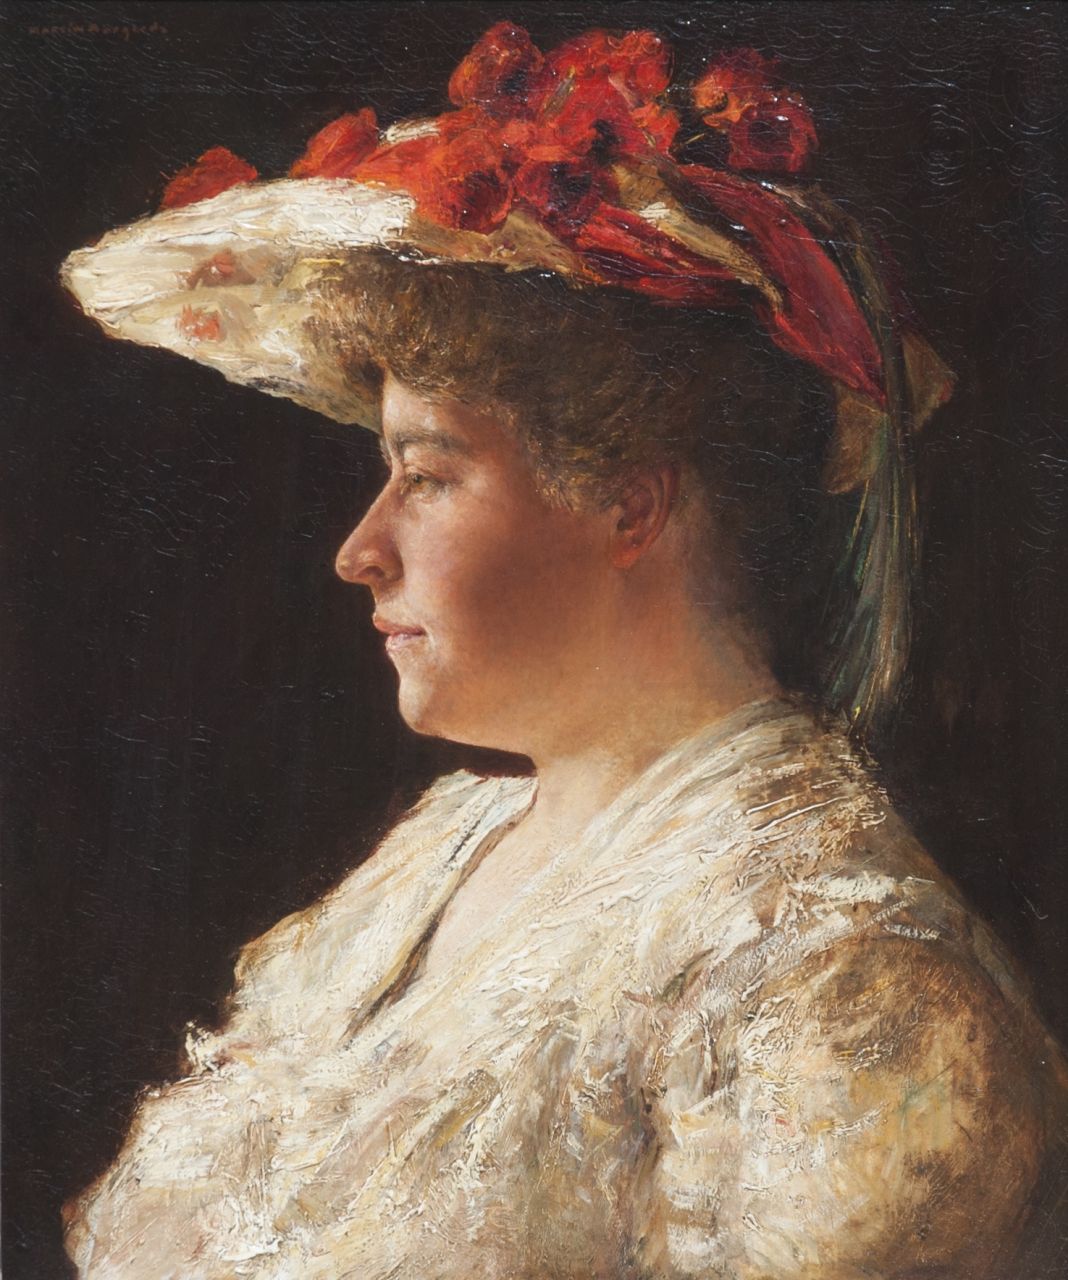 Borgord M.  | Martin Borgord, A portrait of Mrs. A. Singer-Brugh, Öl auf Leinwand 55,2 x 46,0 cm, signed u.l.